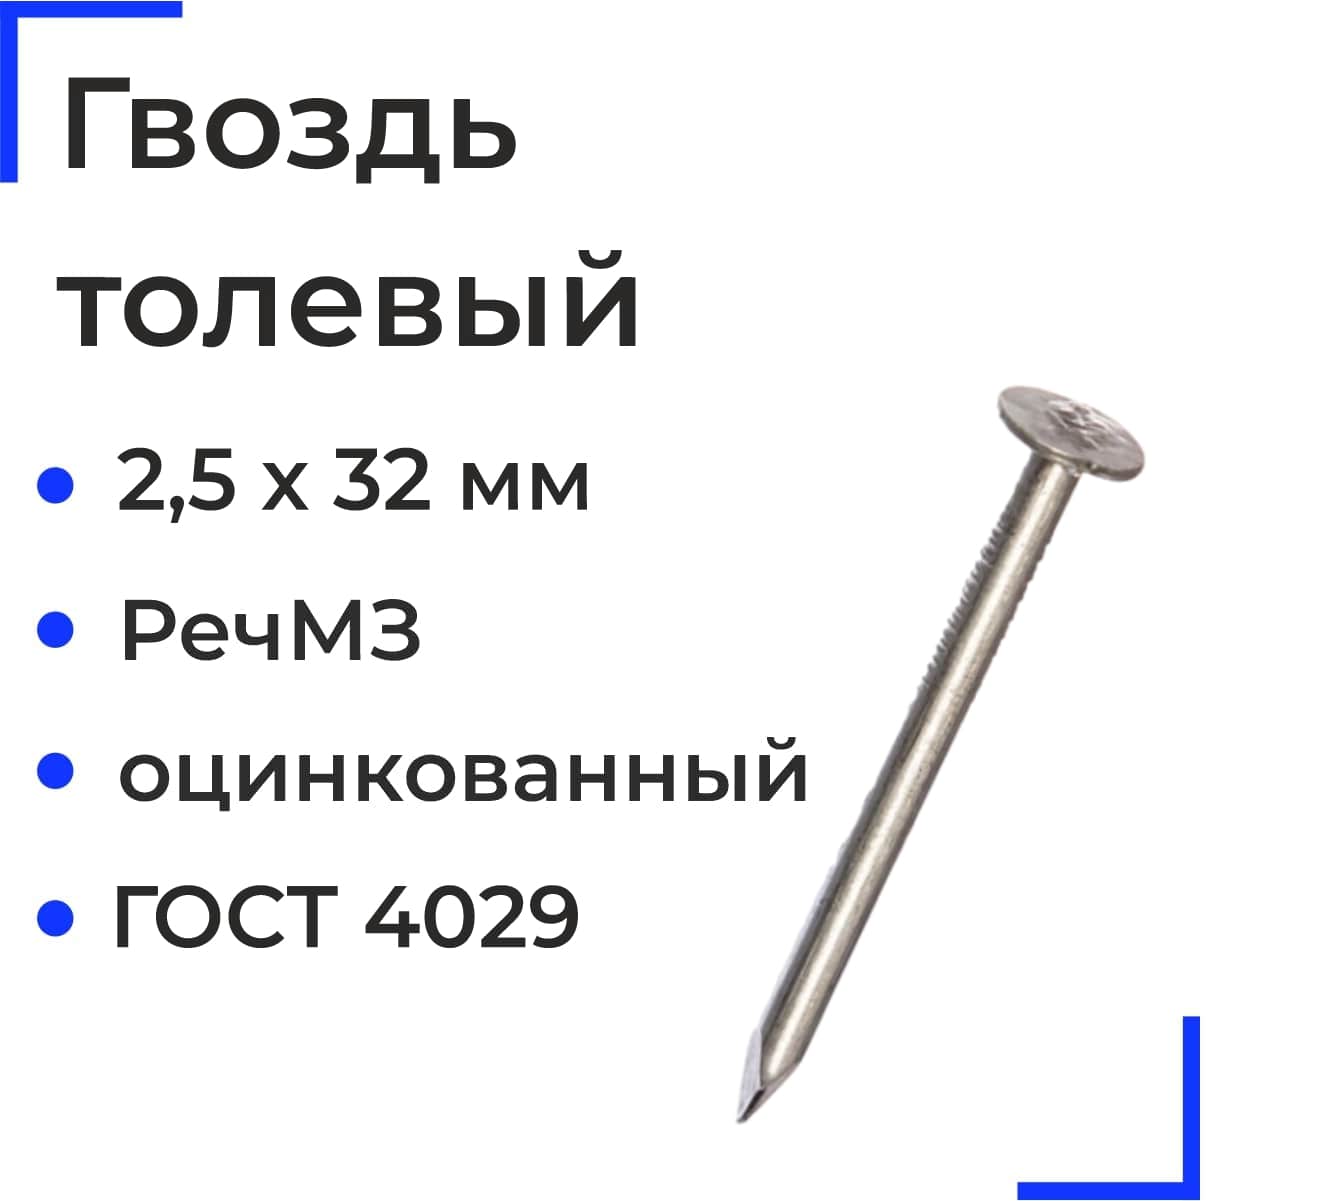 Гвозди толевые 2,5х32 РечМЗ  (ГОСТ 4029) (5 кг)